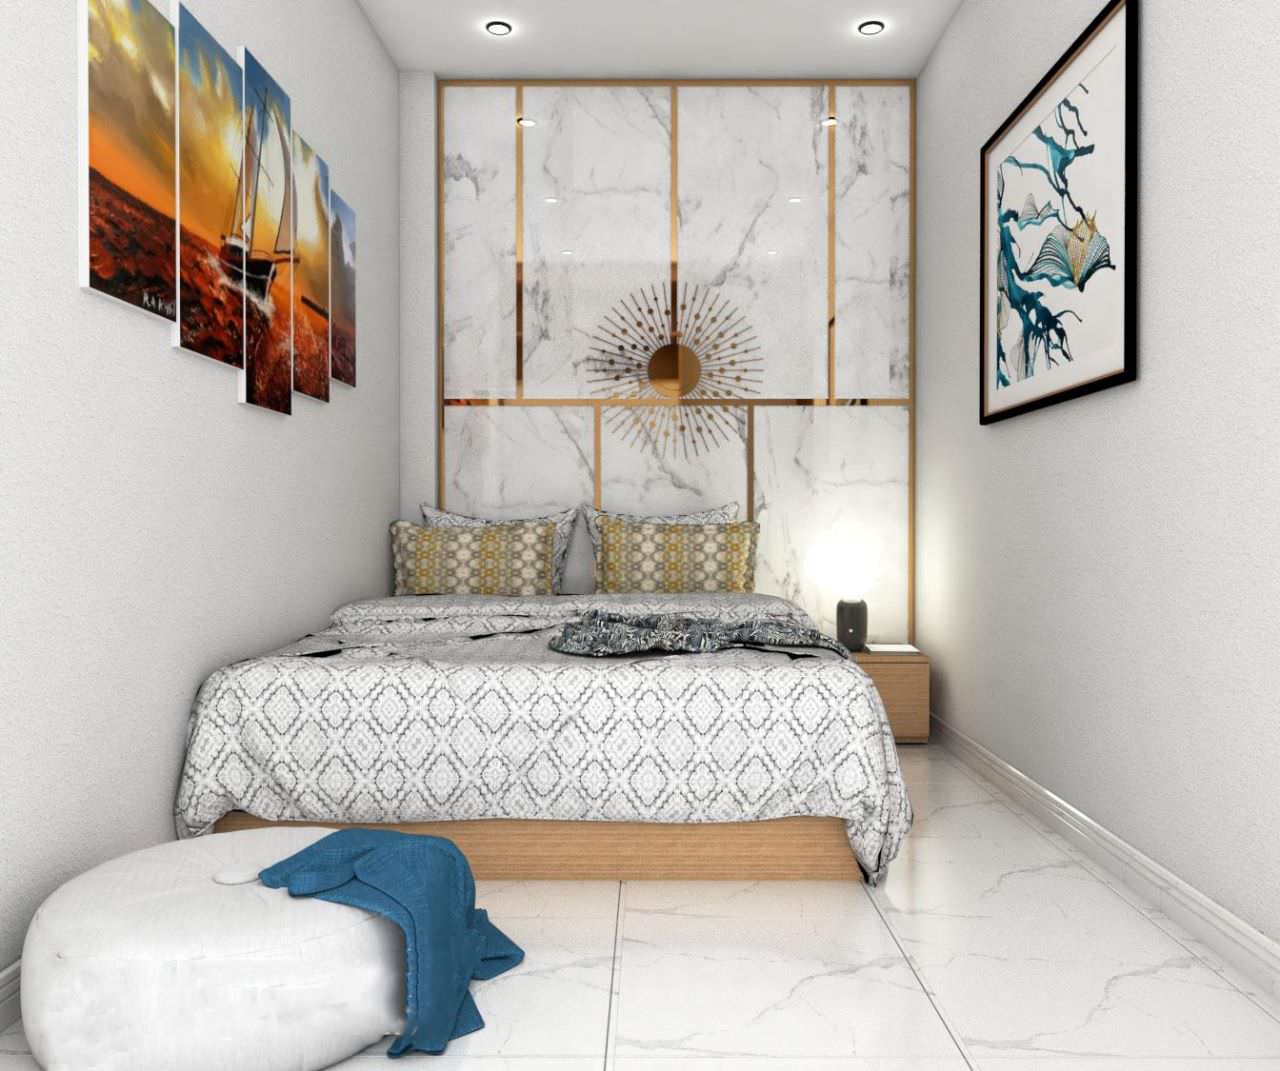 Trang trí phòng ngủ 2m5 với tông màu trắng, sử dụng gạch ốp sang trọng và tạo điểm nhấn với nẹp chỉ vàng